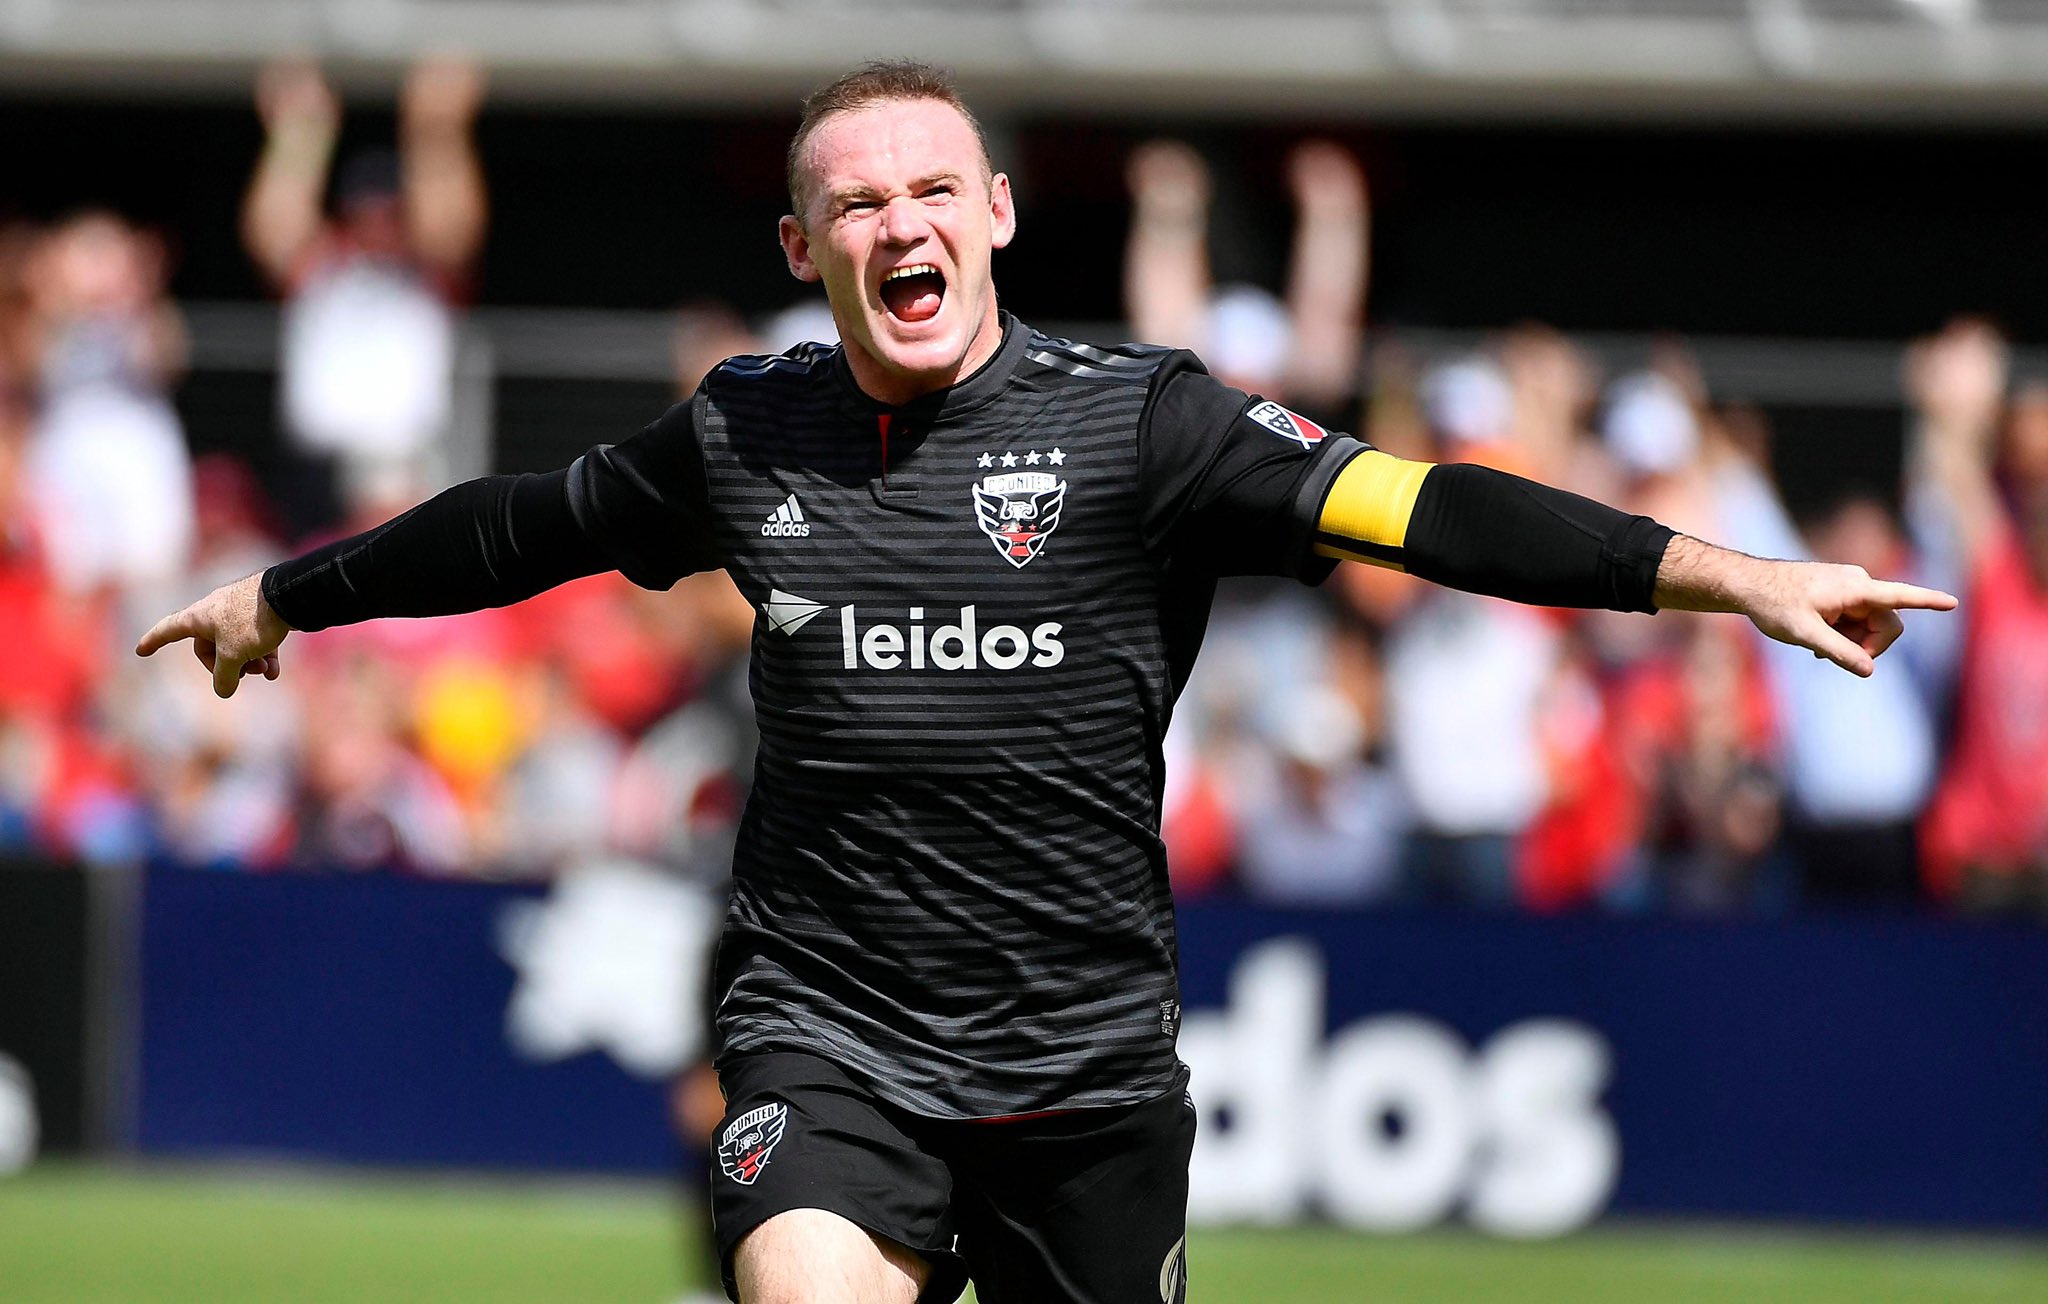 El inglés Wayne Rooney se retira del fútbol en Derby County - El